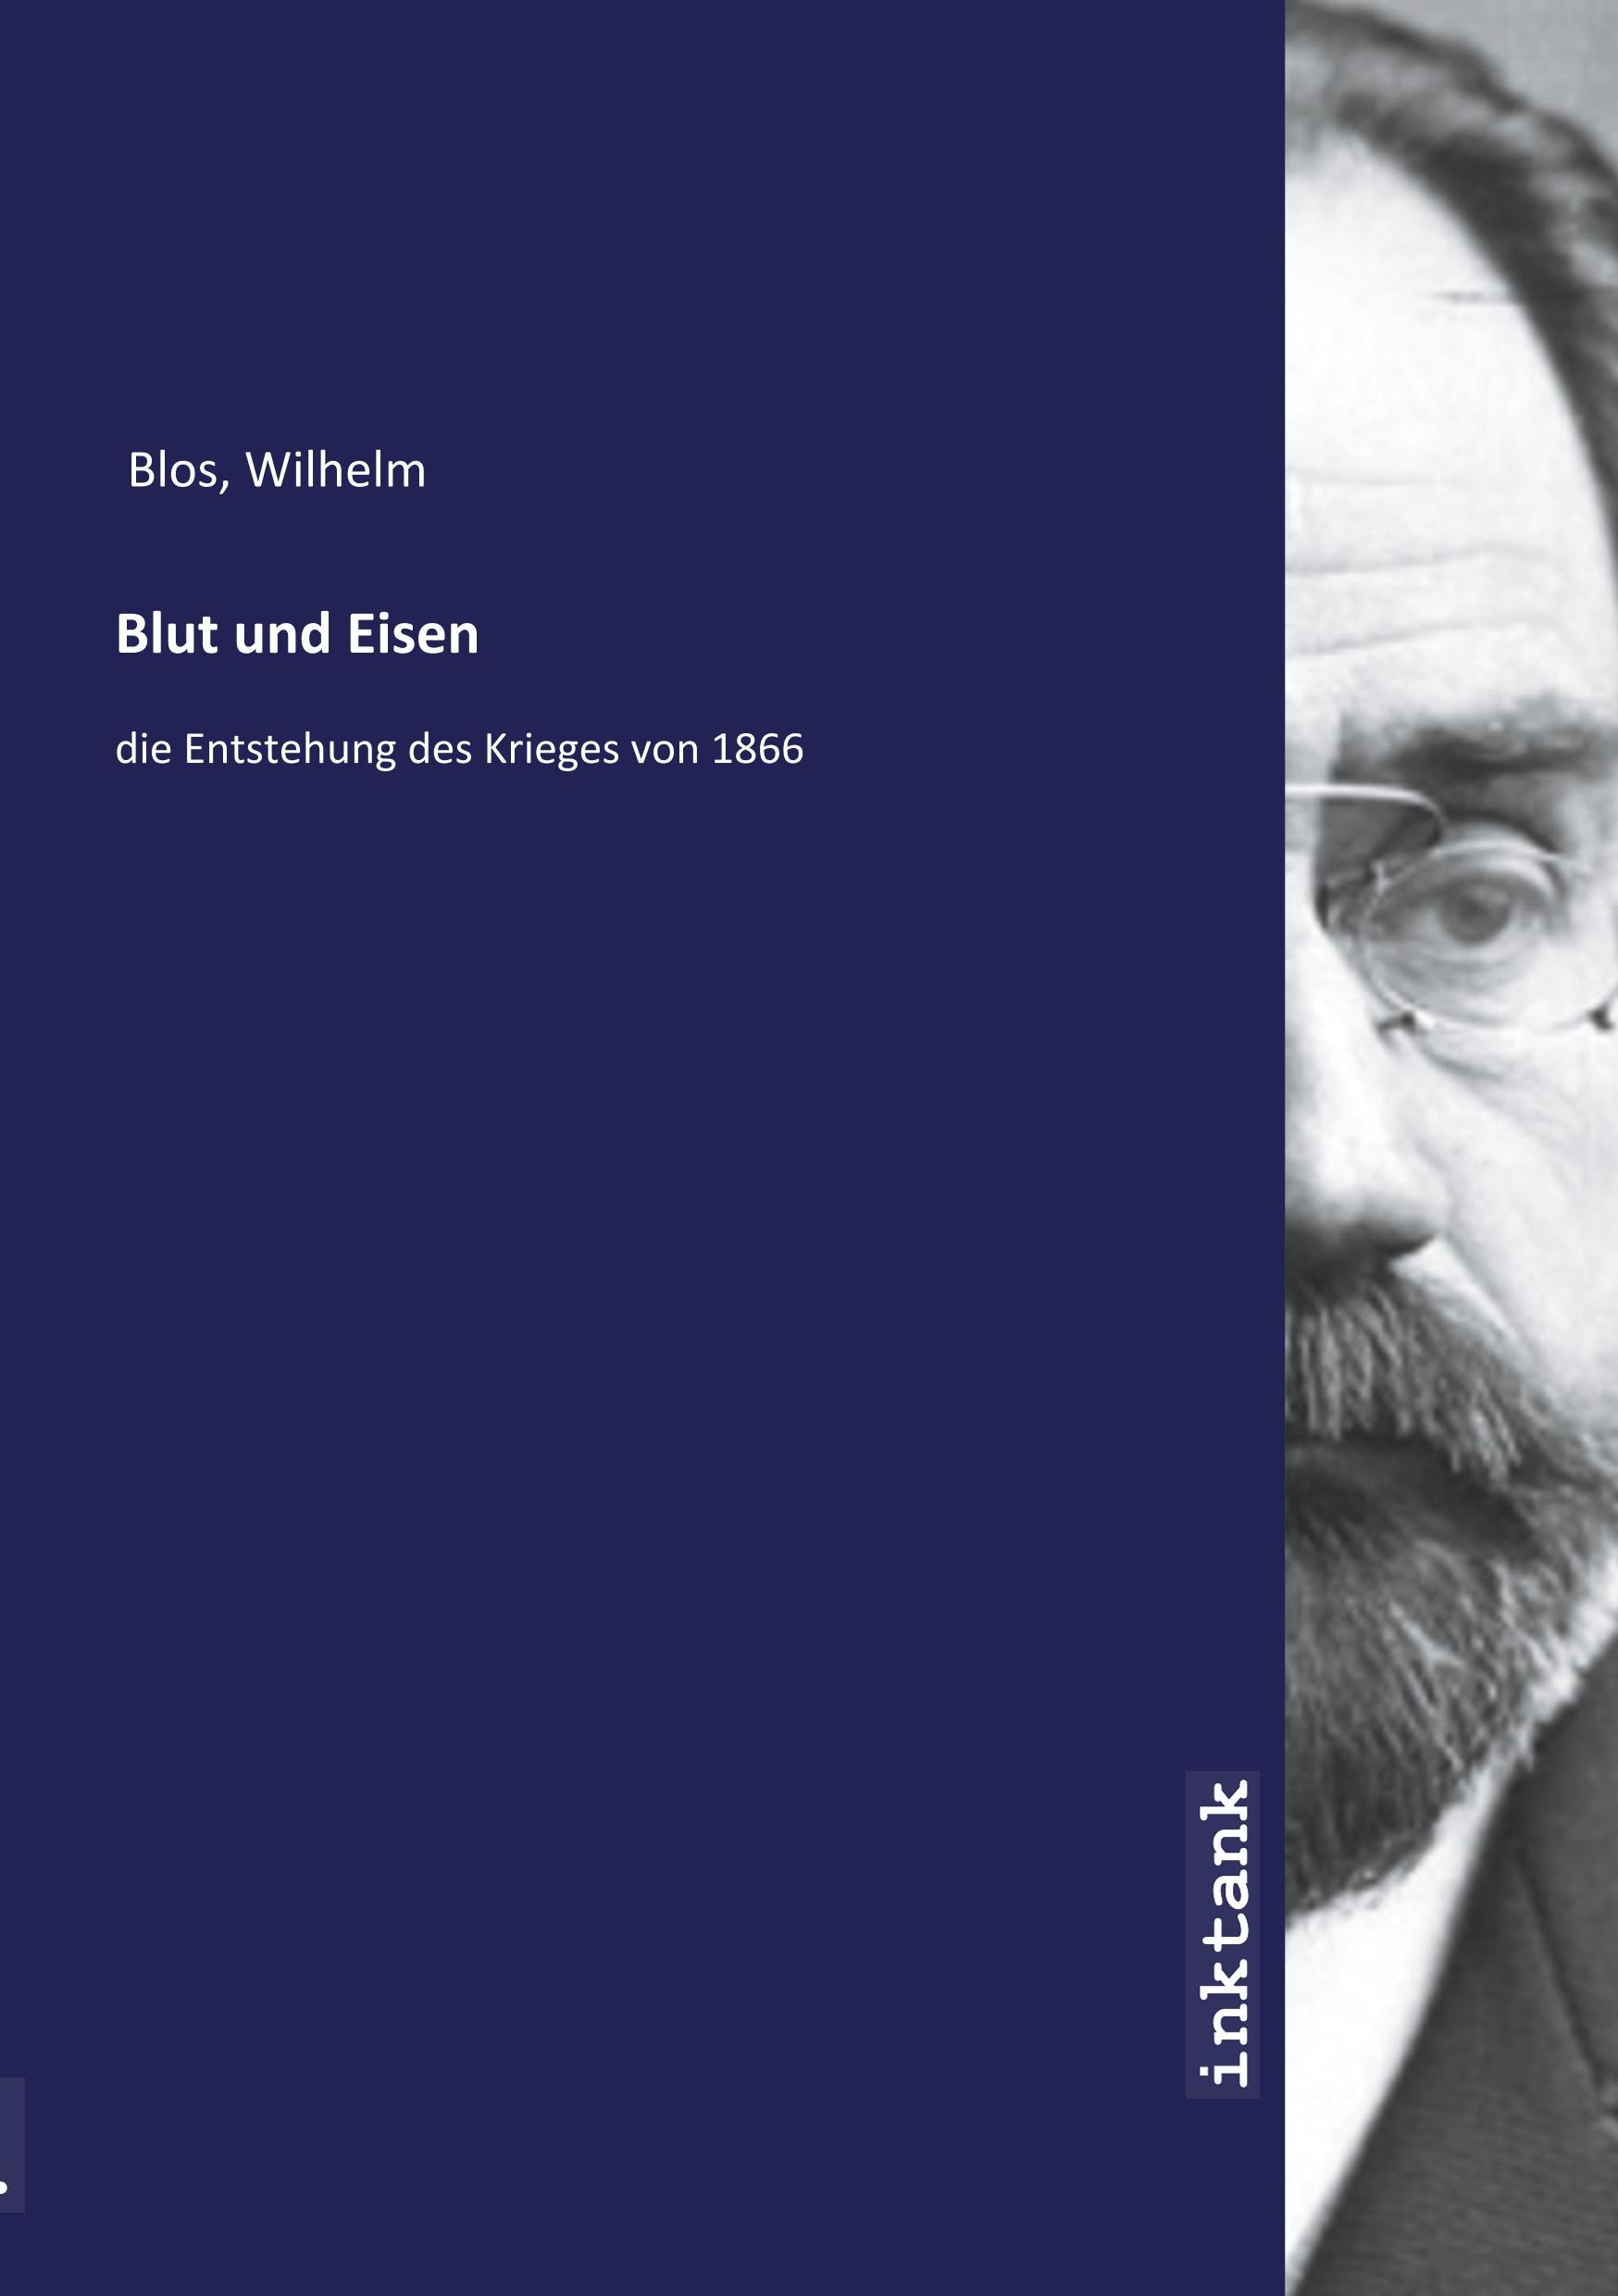 Blut und Eisen - Blos, Wilhelm